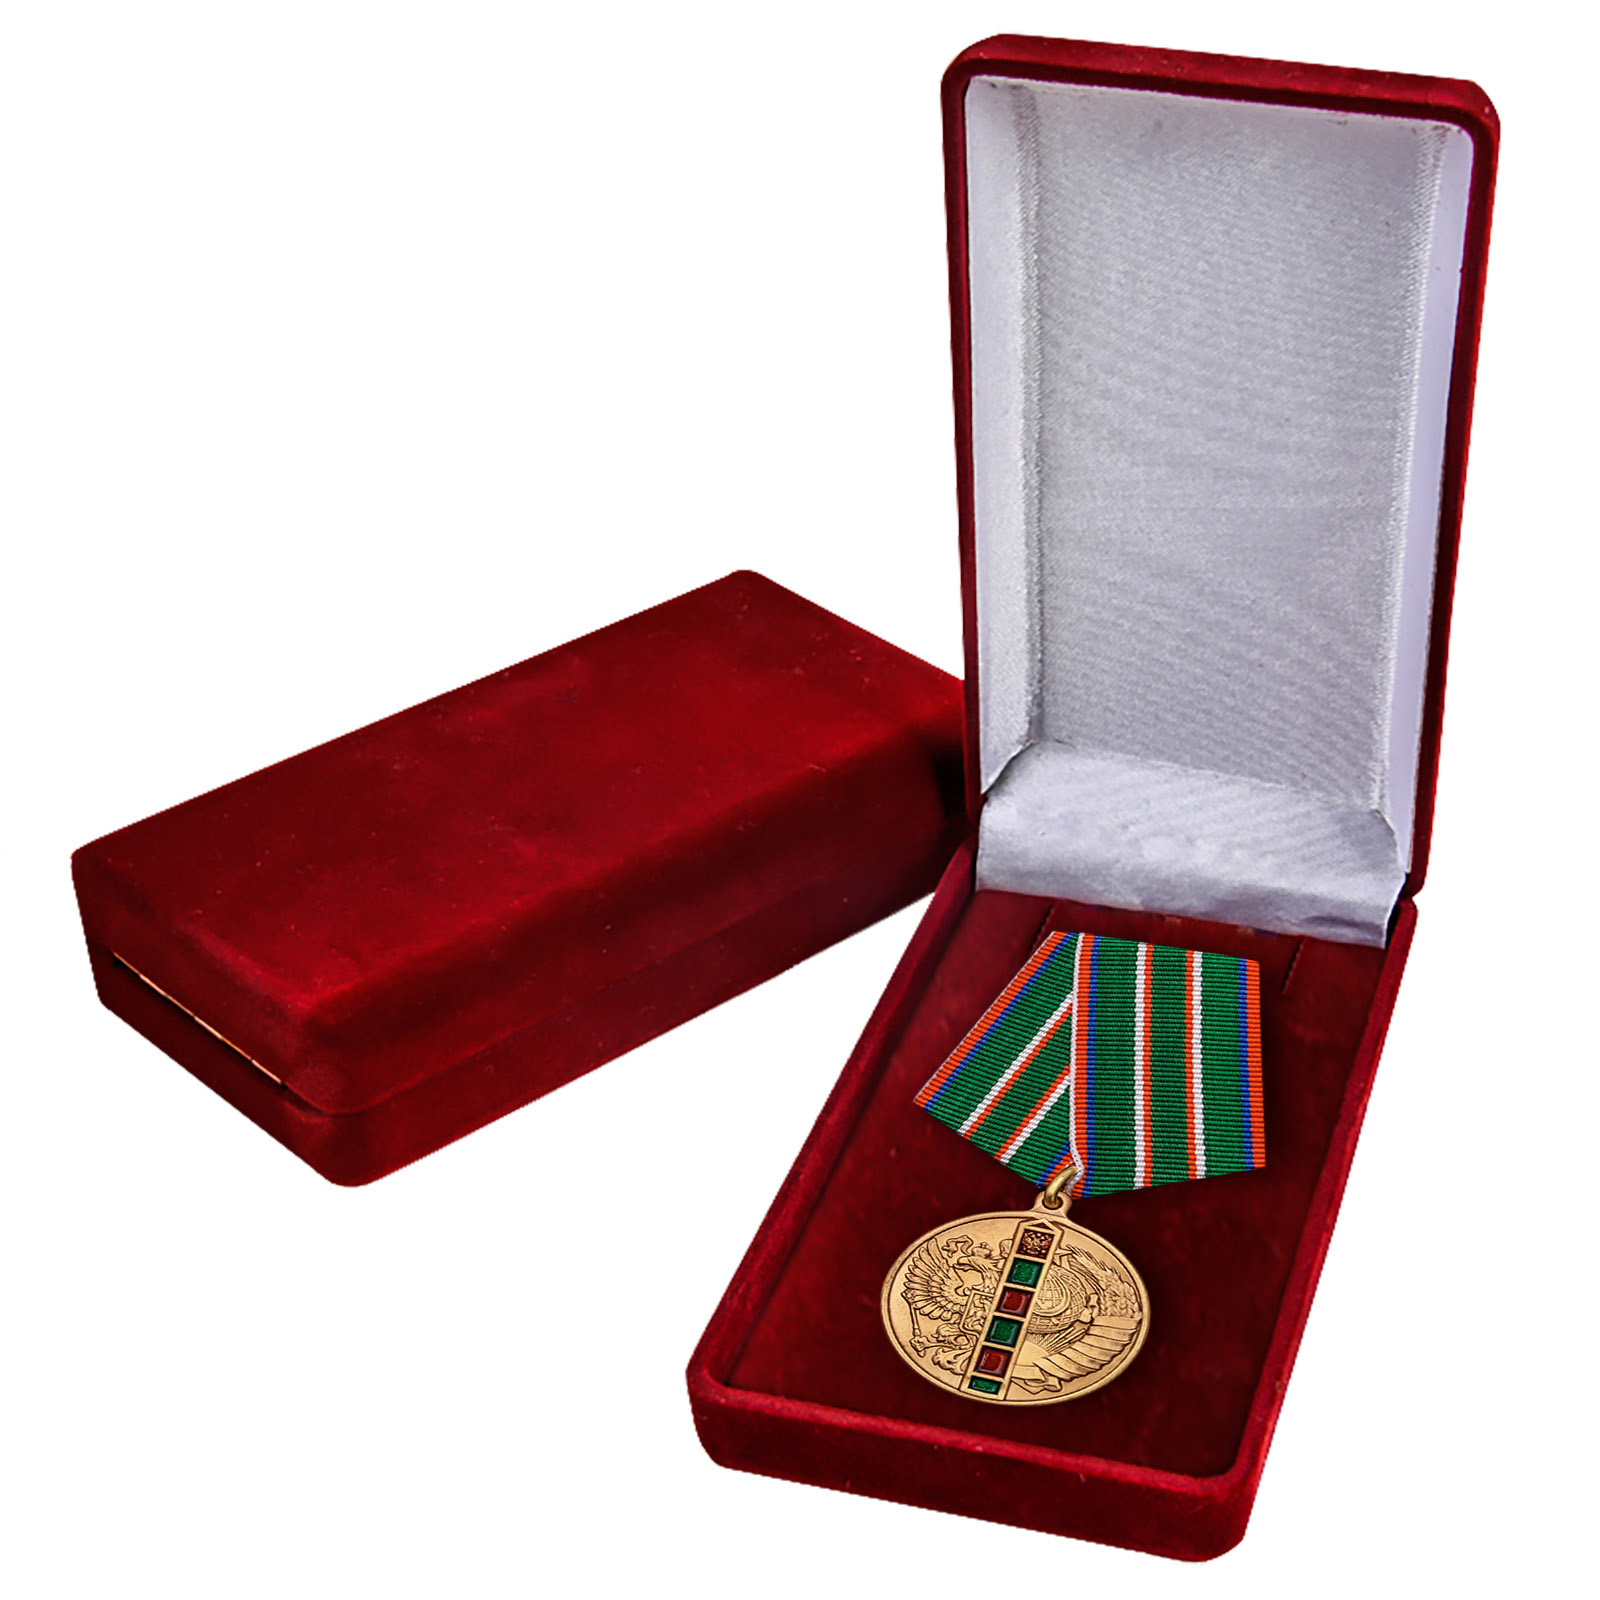 Описание медали 95 лет Пограничным войскам - аверс и реверс